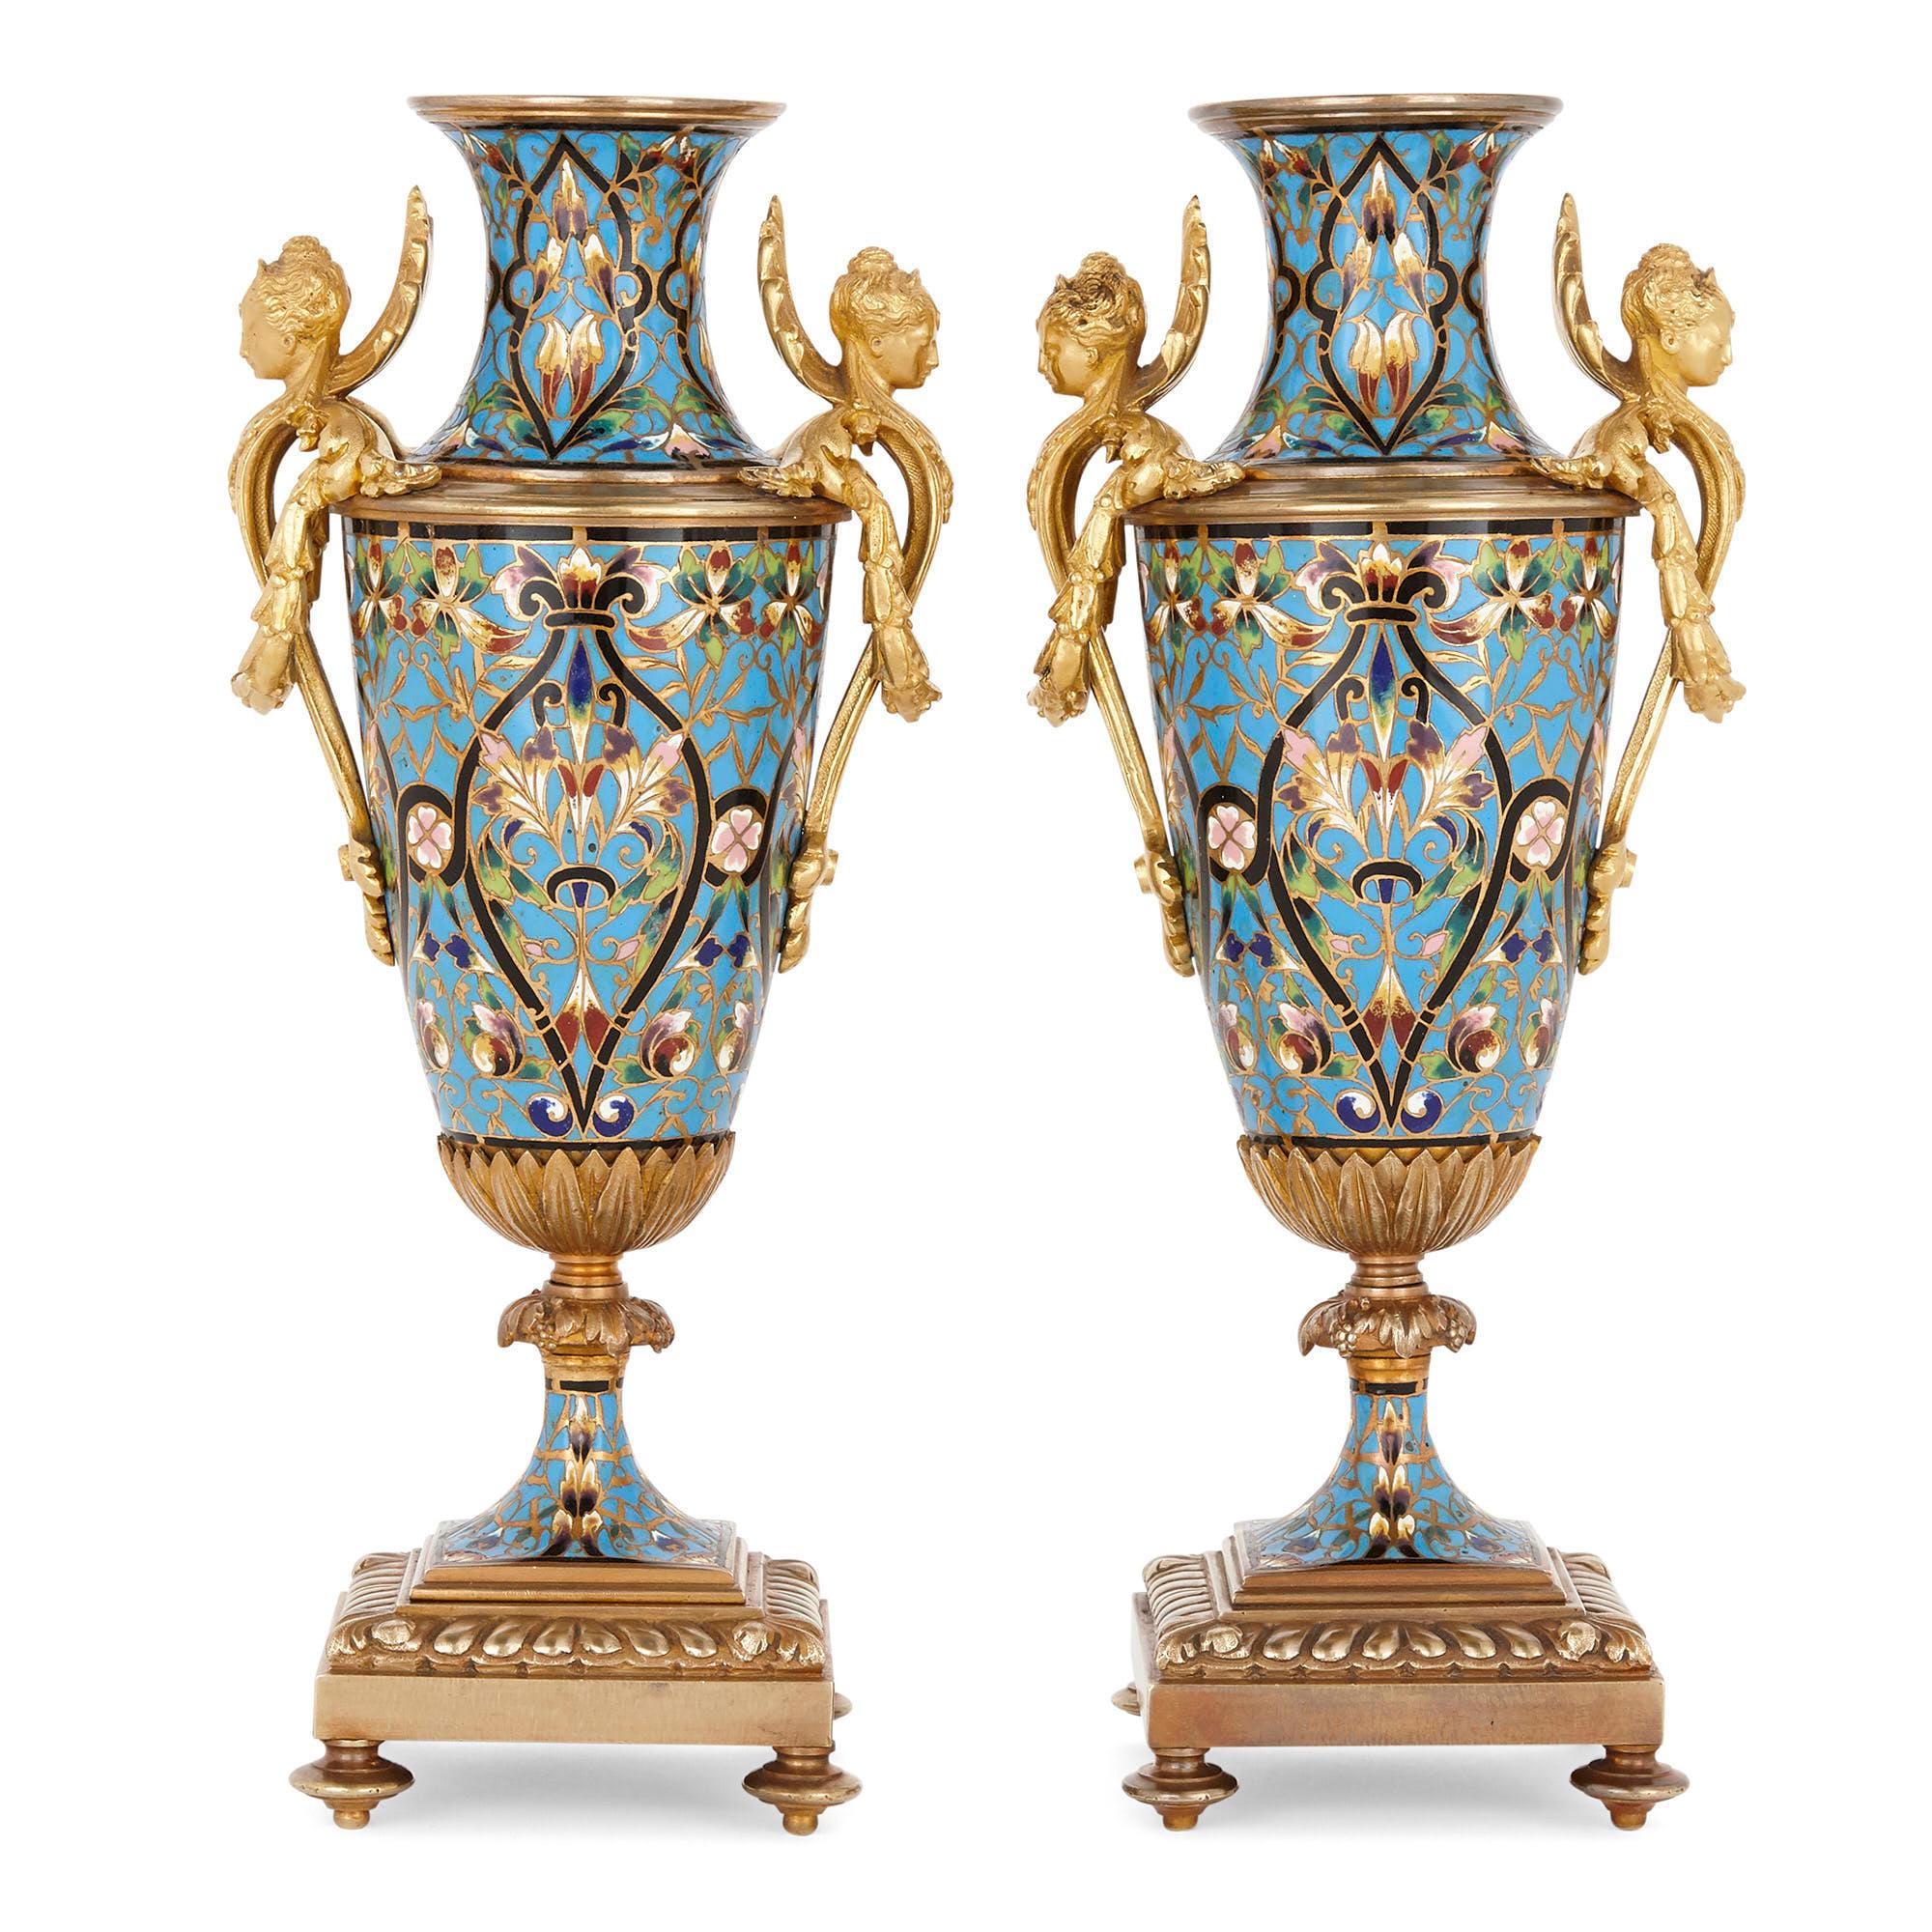 Cette magnifique paire de vases est réalisée en bronze doré et en émail champlevé dans le style néo-Renaissance, caractéristique et visuellement saisissant. Le corps cylindrique de chaque vase est abondamment orné d'émail champlevé, l'émail étant